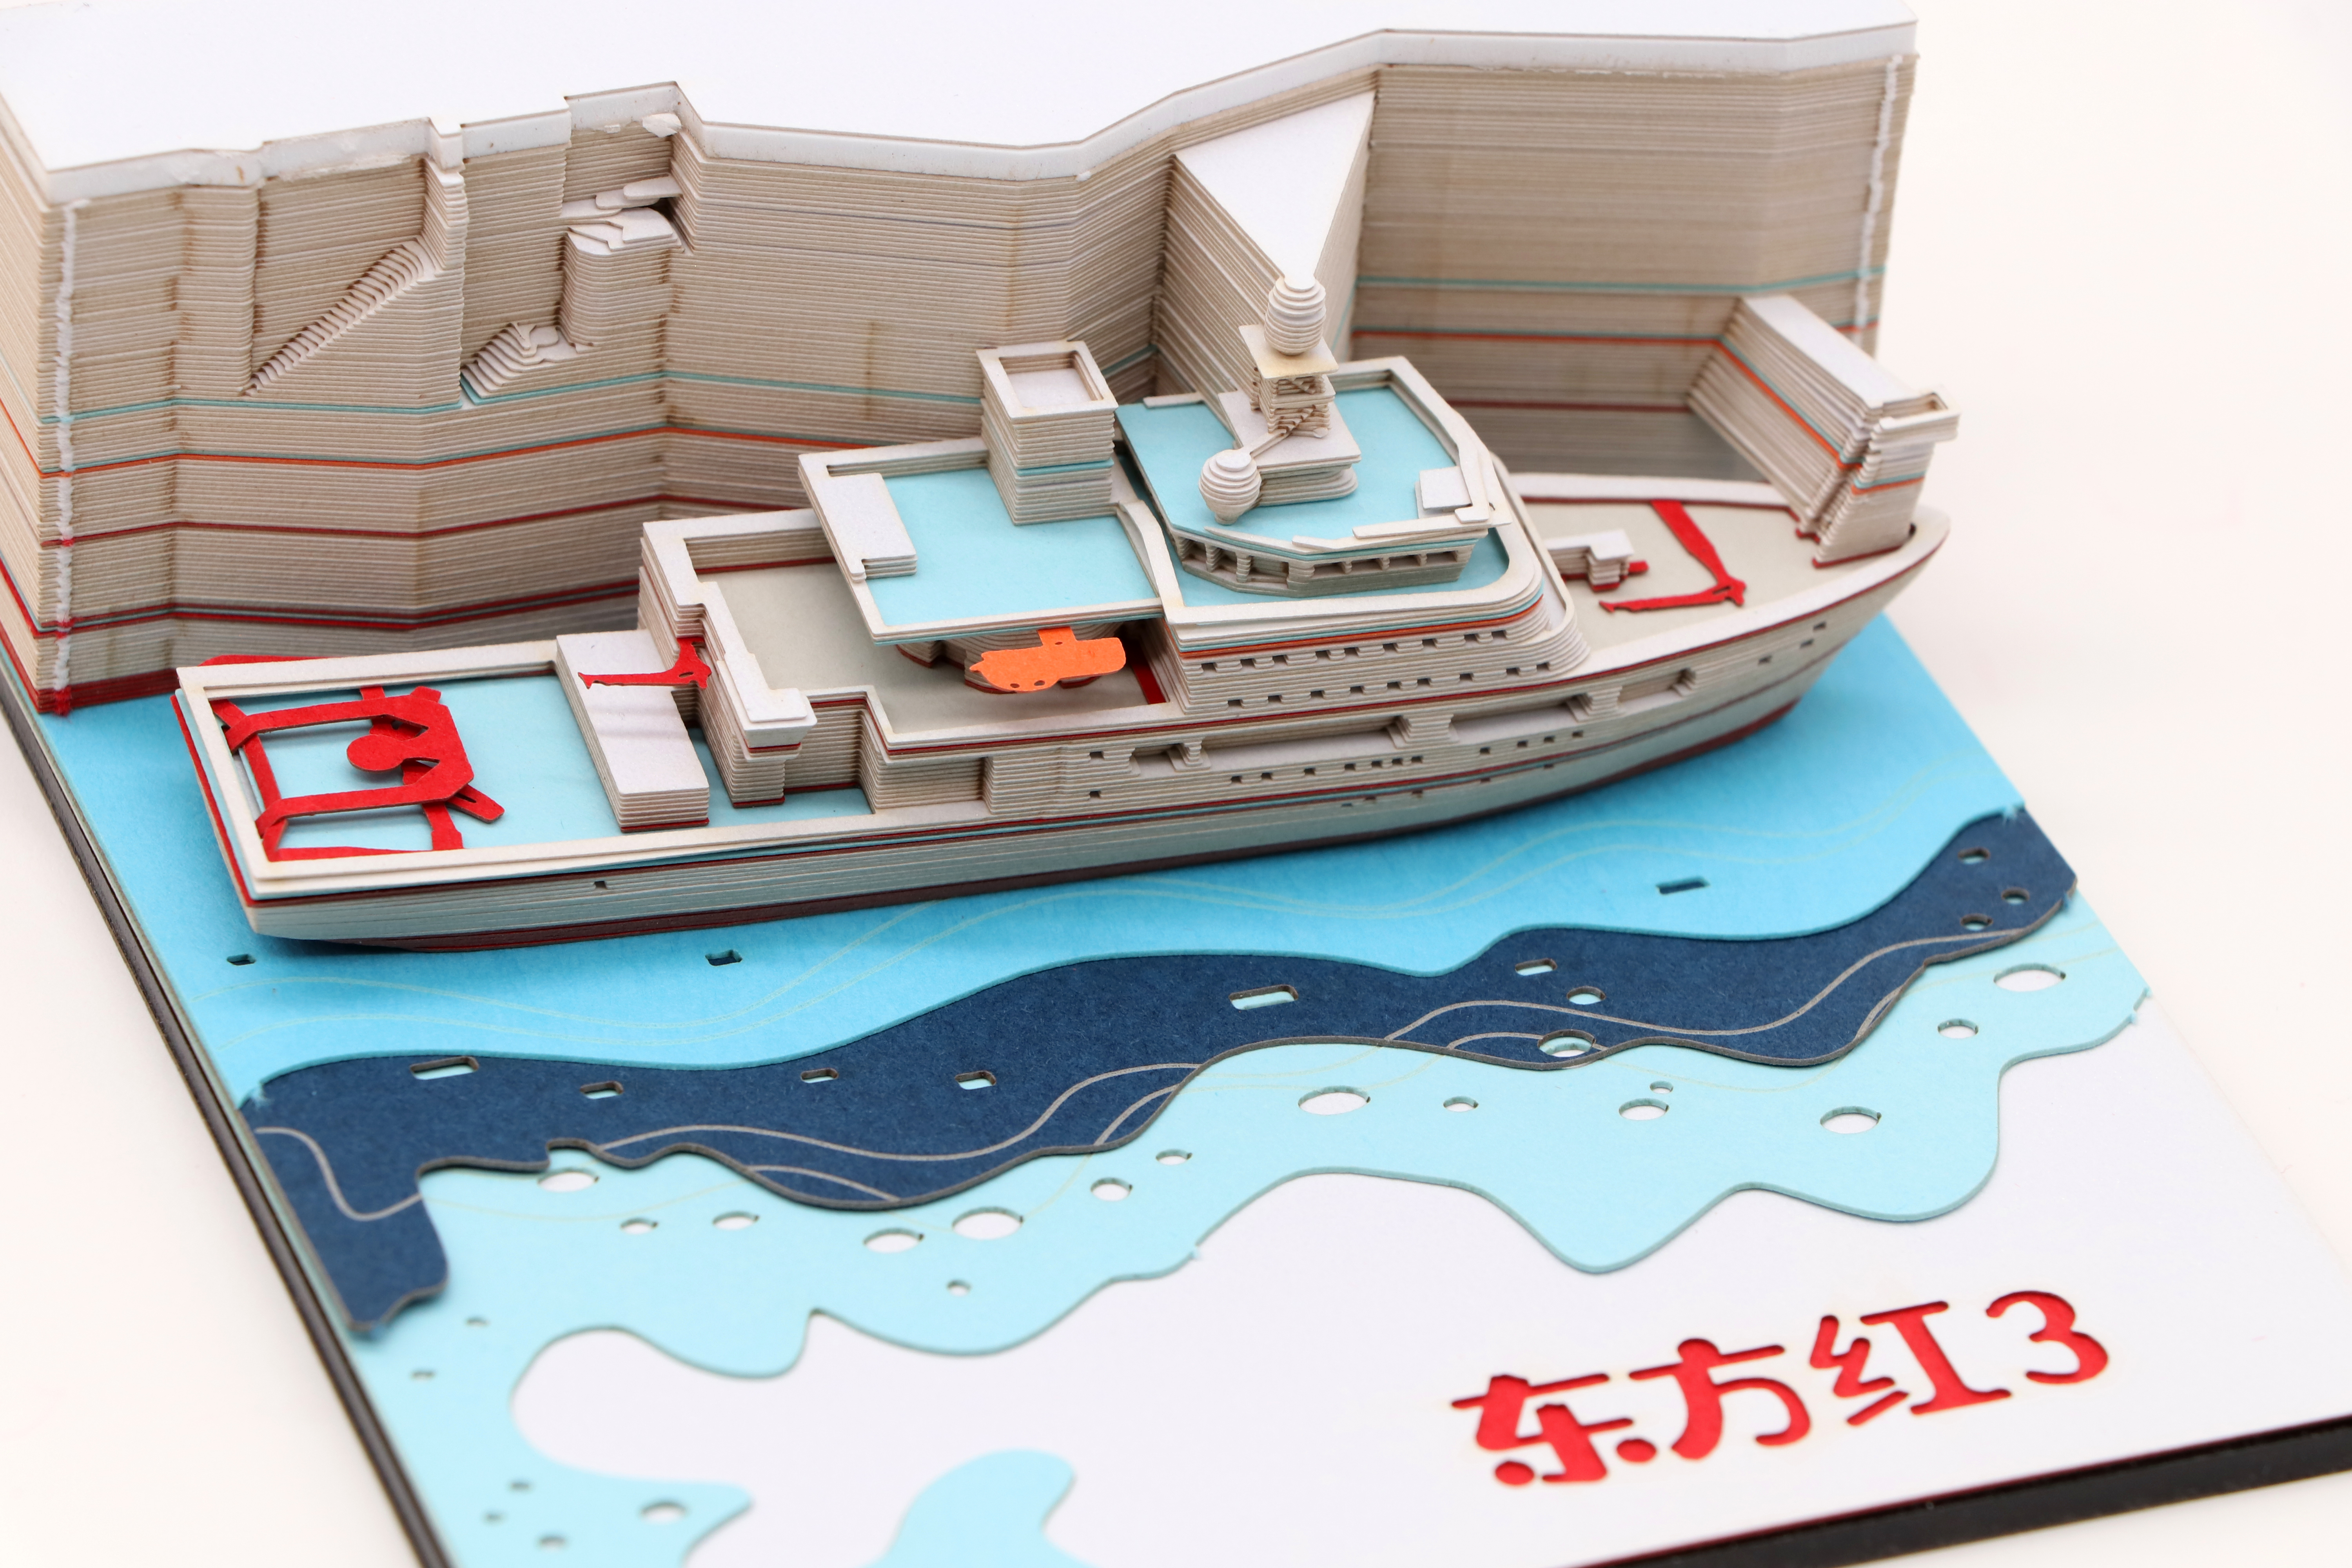 3d立体模型便签纸东方红科考船模型便签纸厂家定制